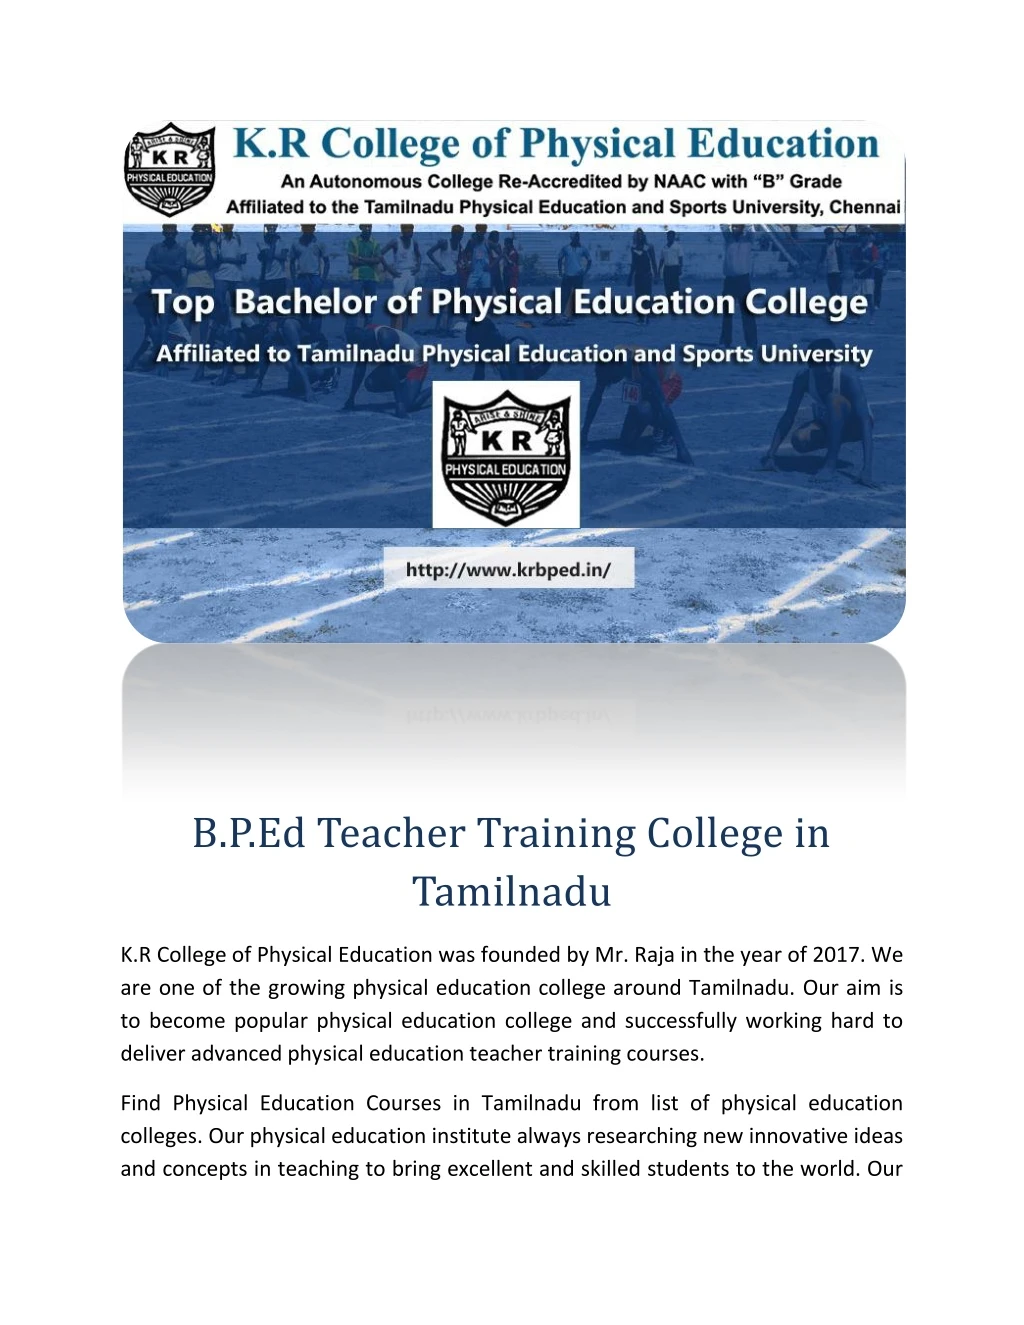 b p ed teacher training college in tamilnadu